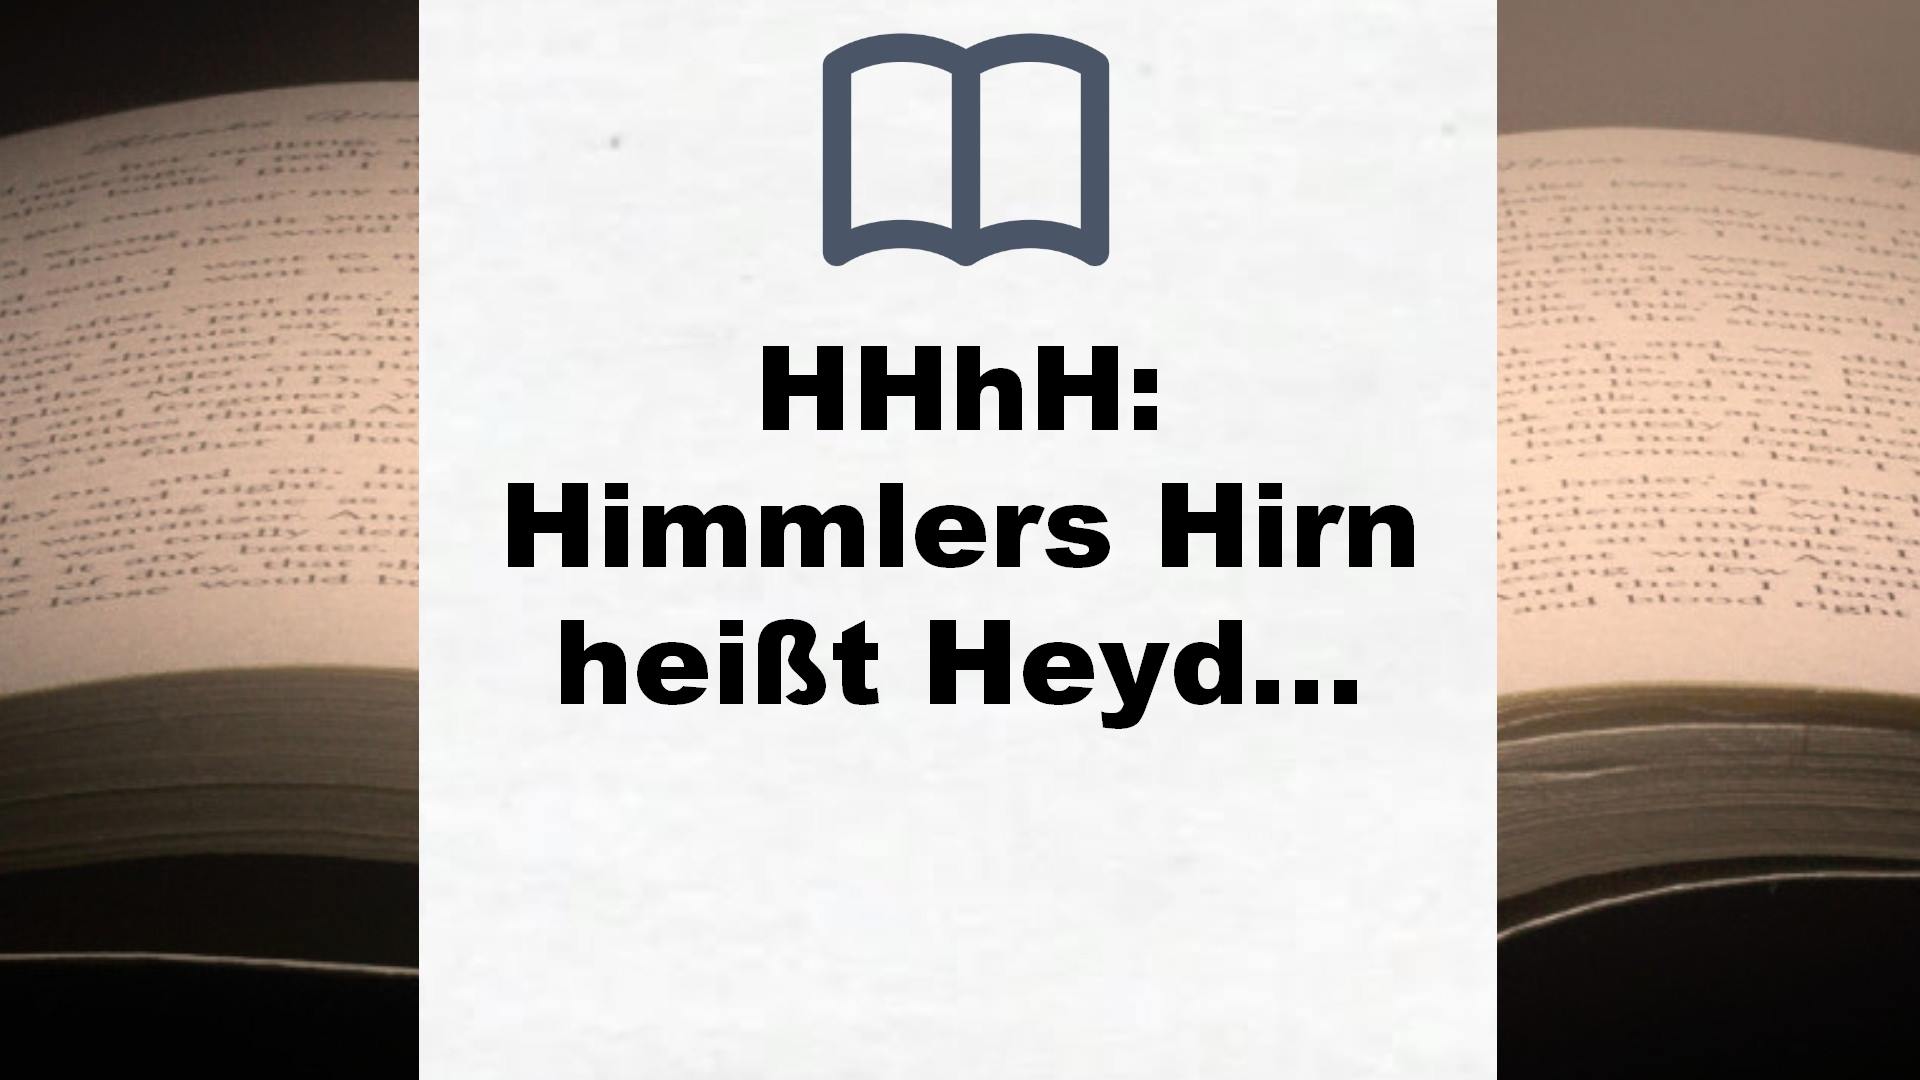 HHhH: Himmlers Hirn heißt Heydrich – Buchrezension